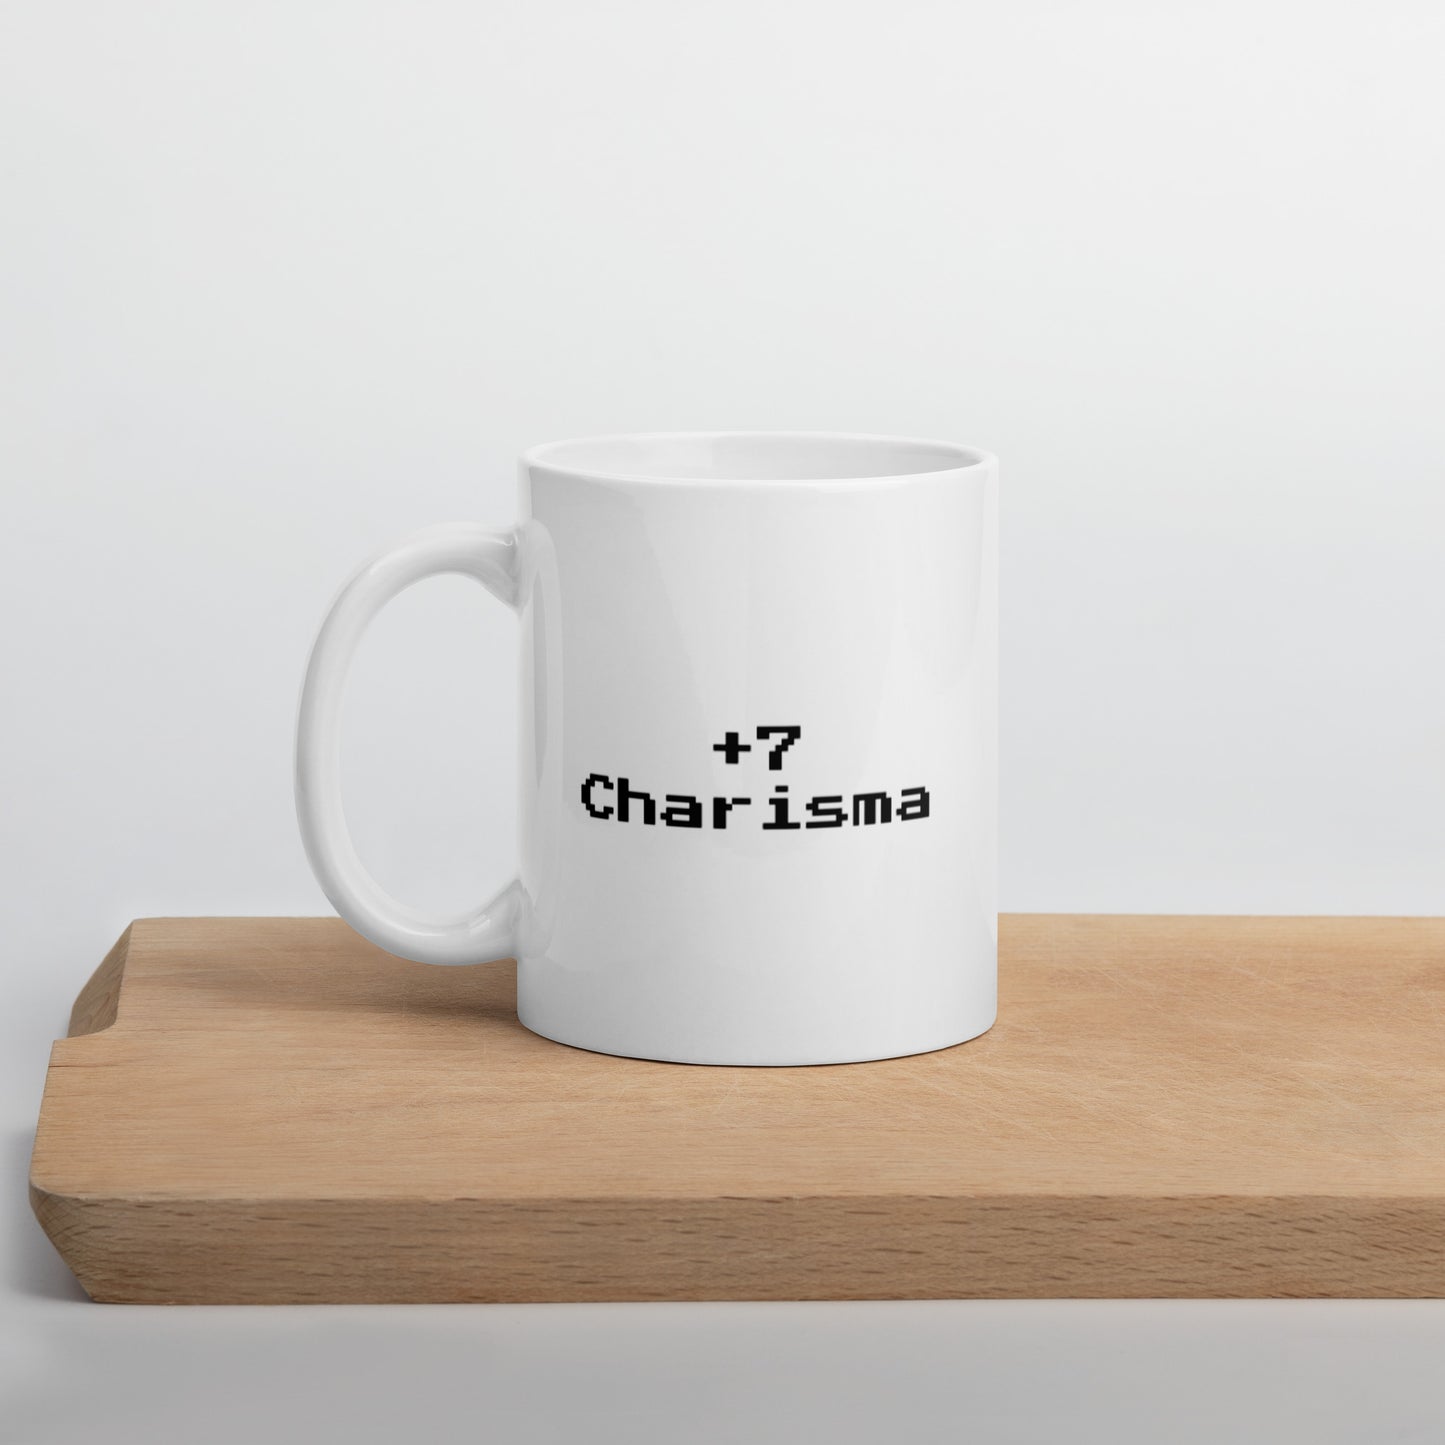 +7 charisma - Mug